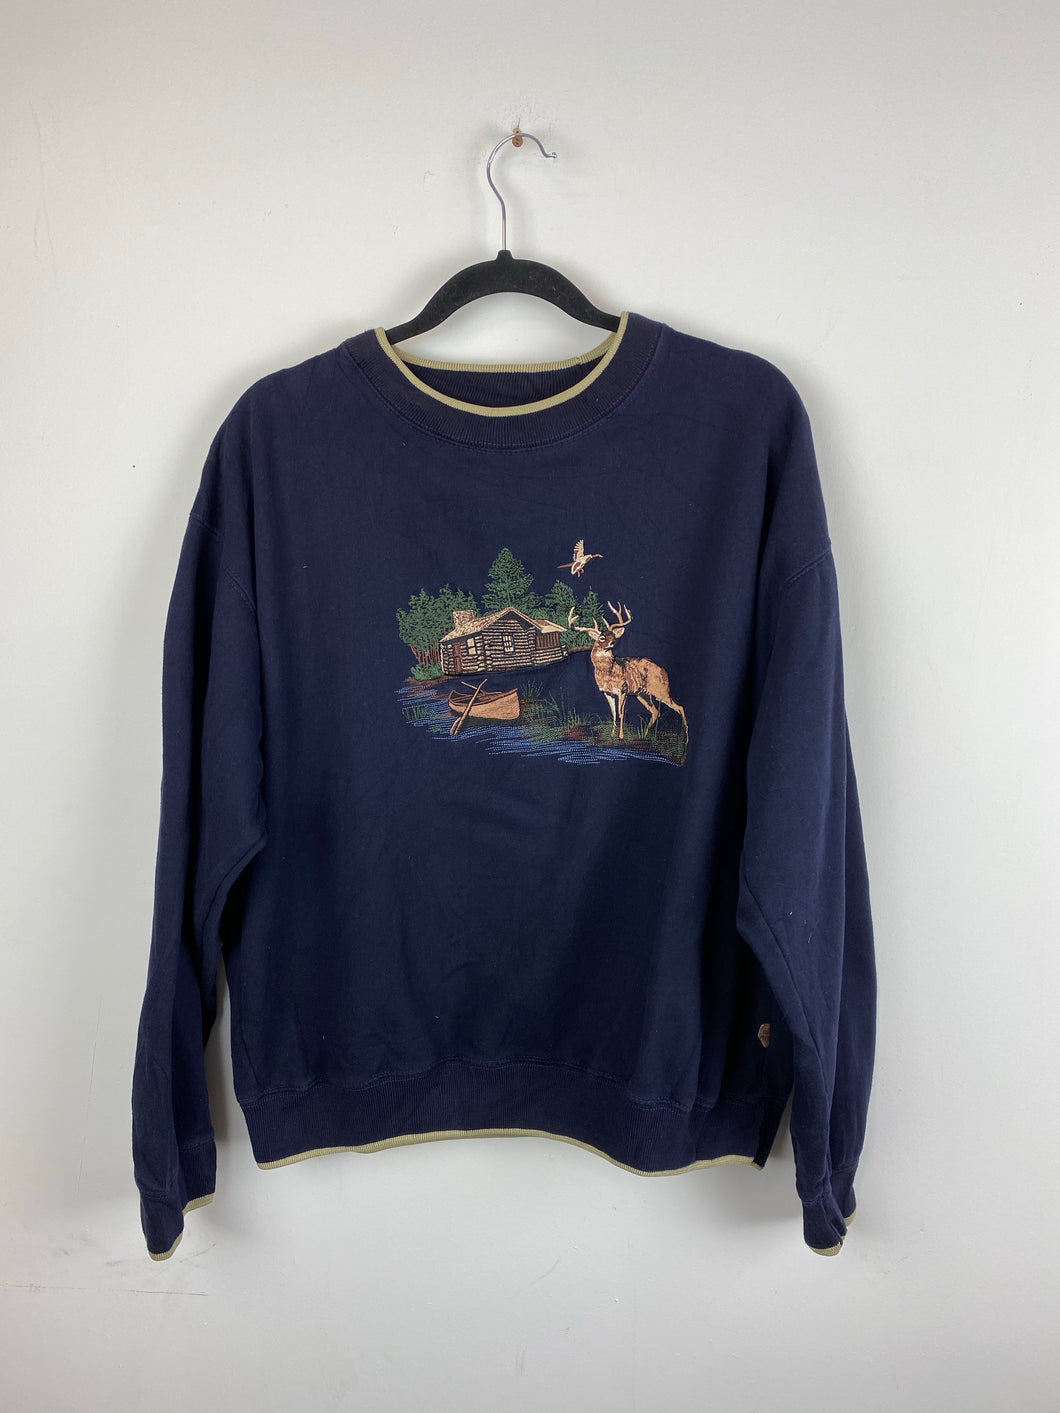 Vintage embroidered Deer crewneck